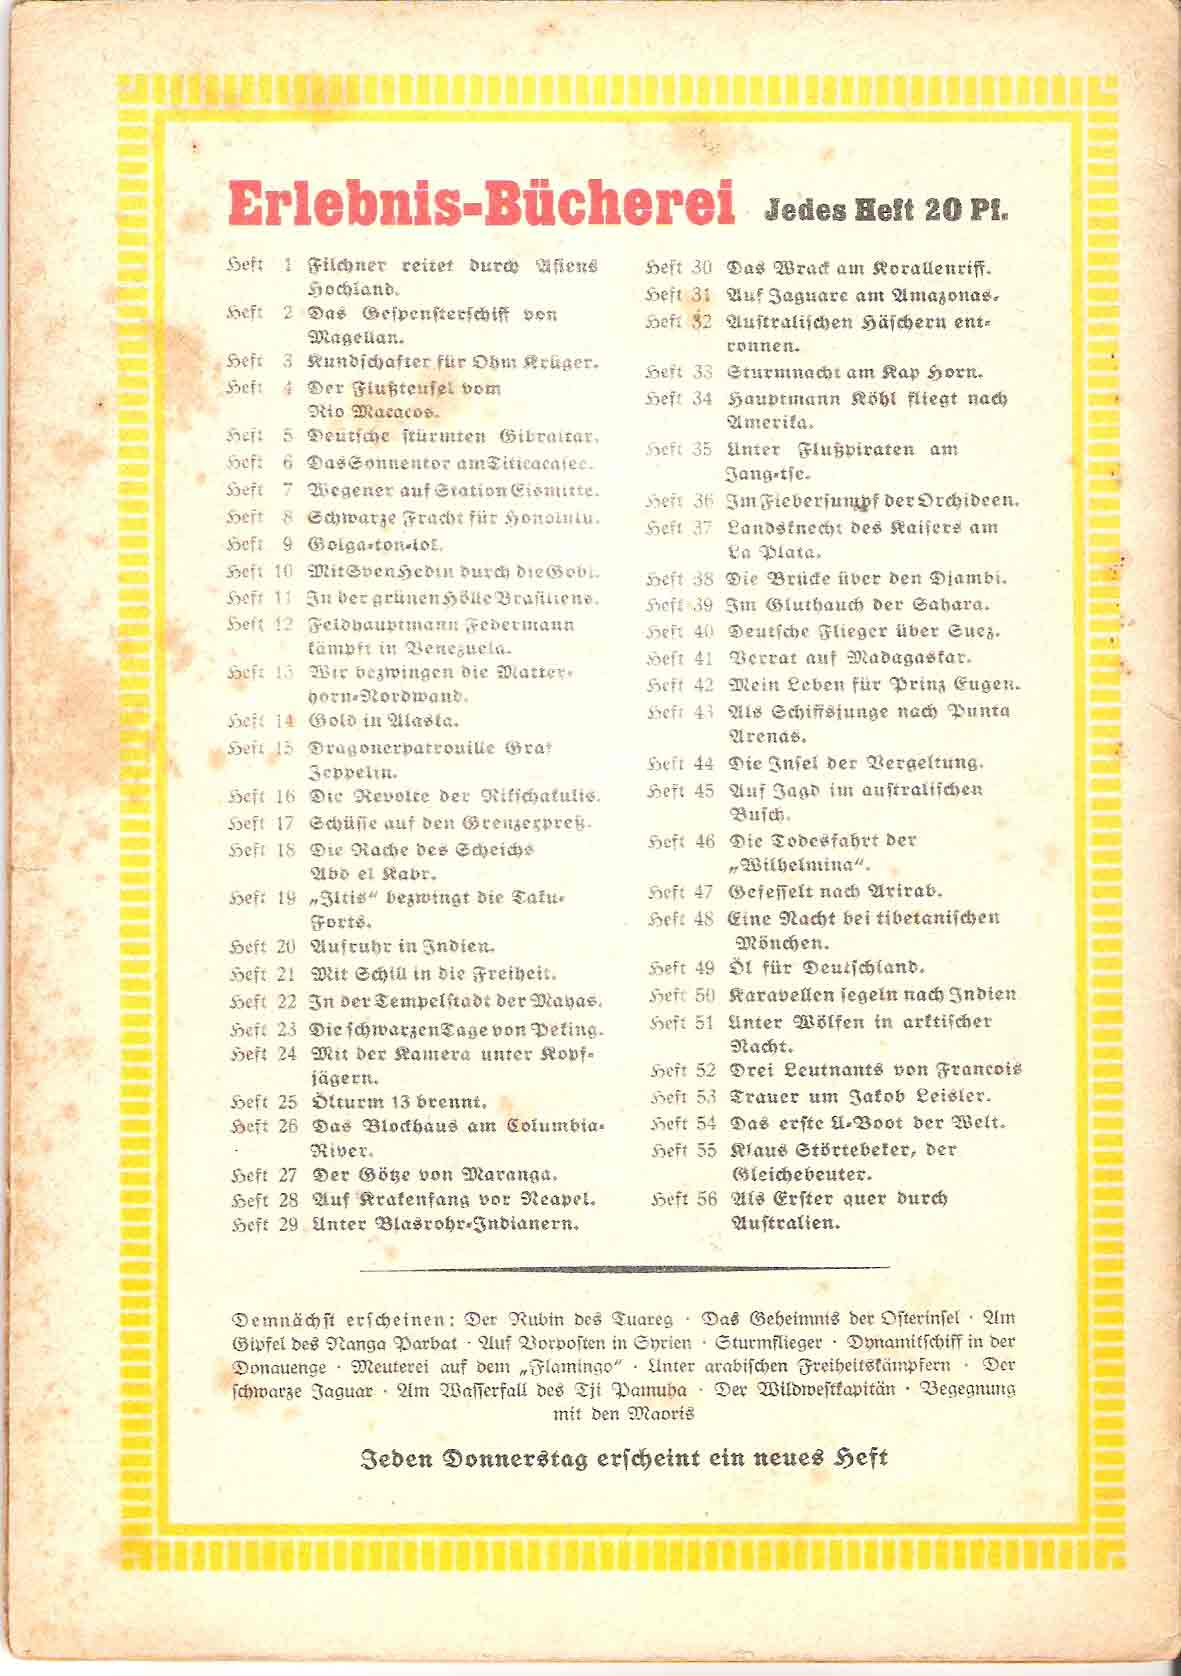 Liste, Hefte 1-56, Erlebnis-Bücherei